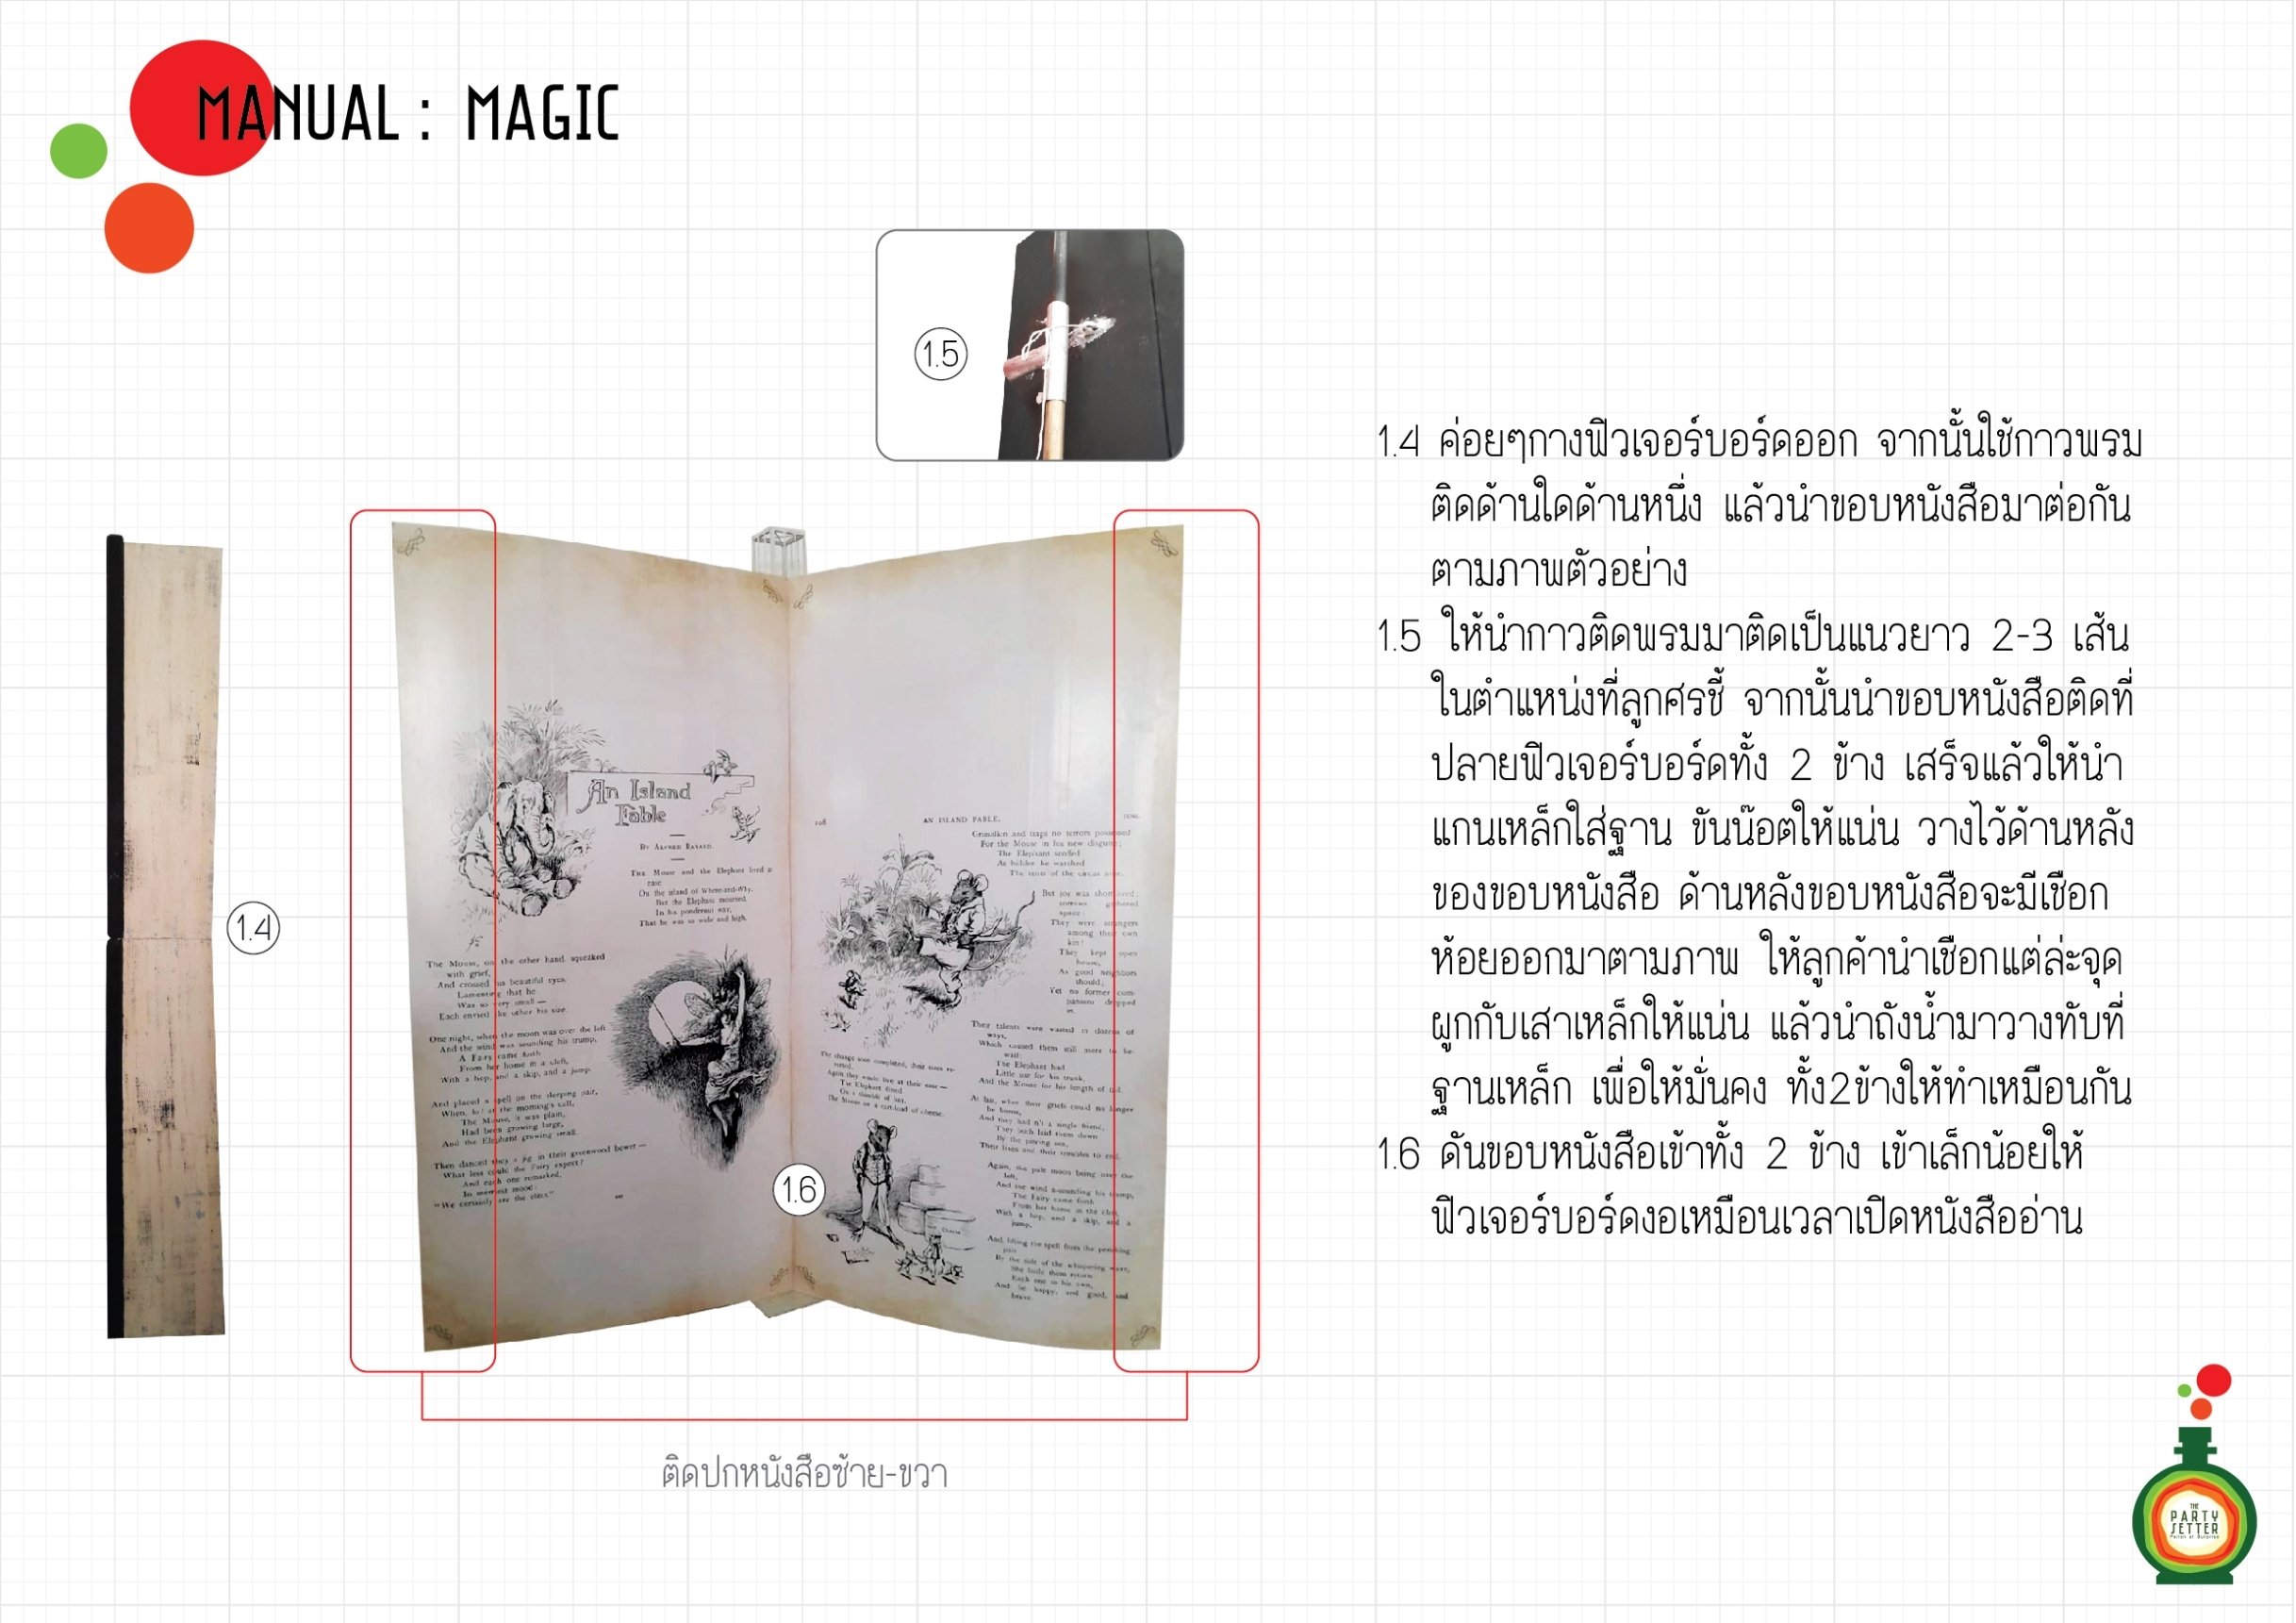 Manual_Magic_01-2-01.jpg